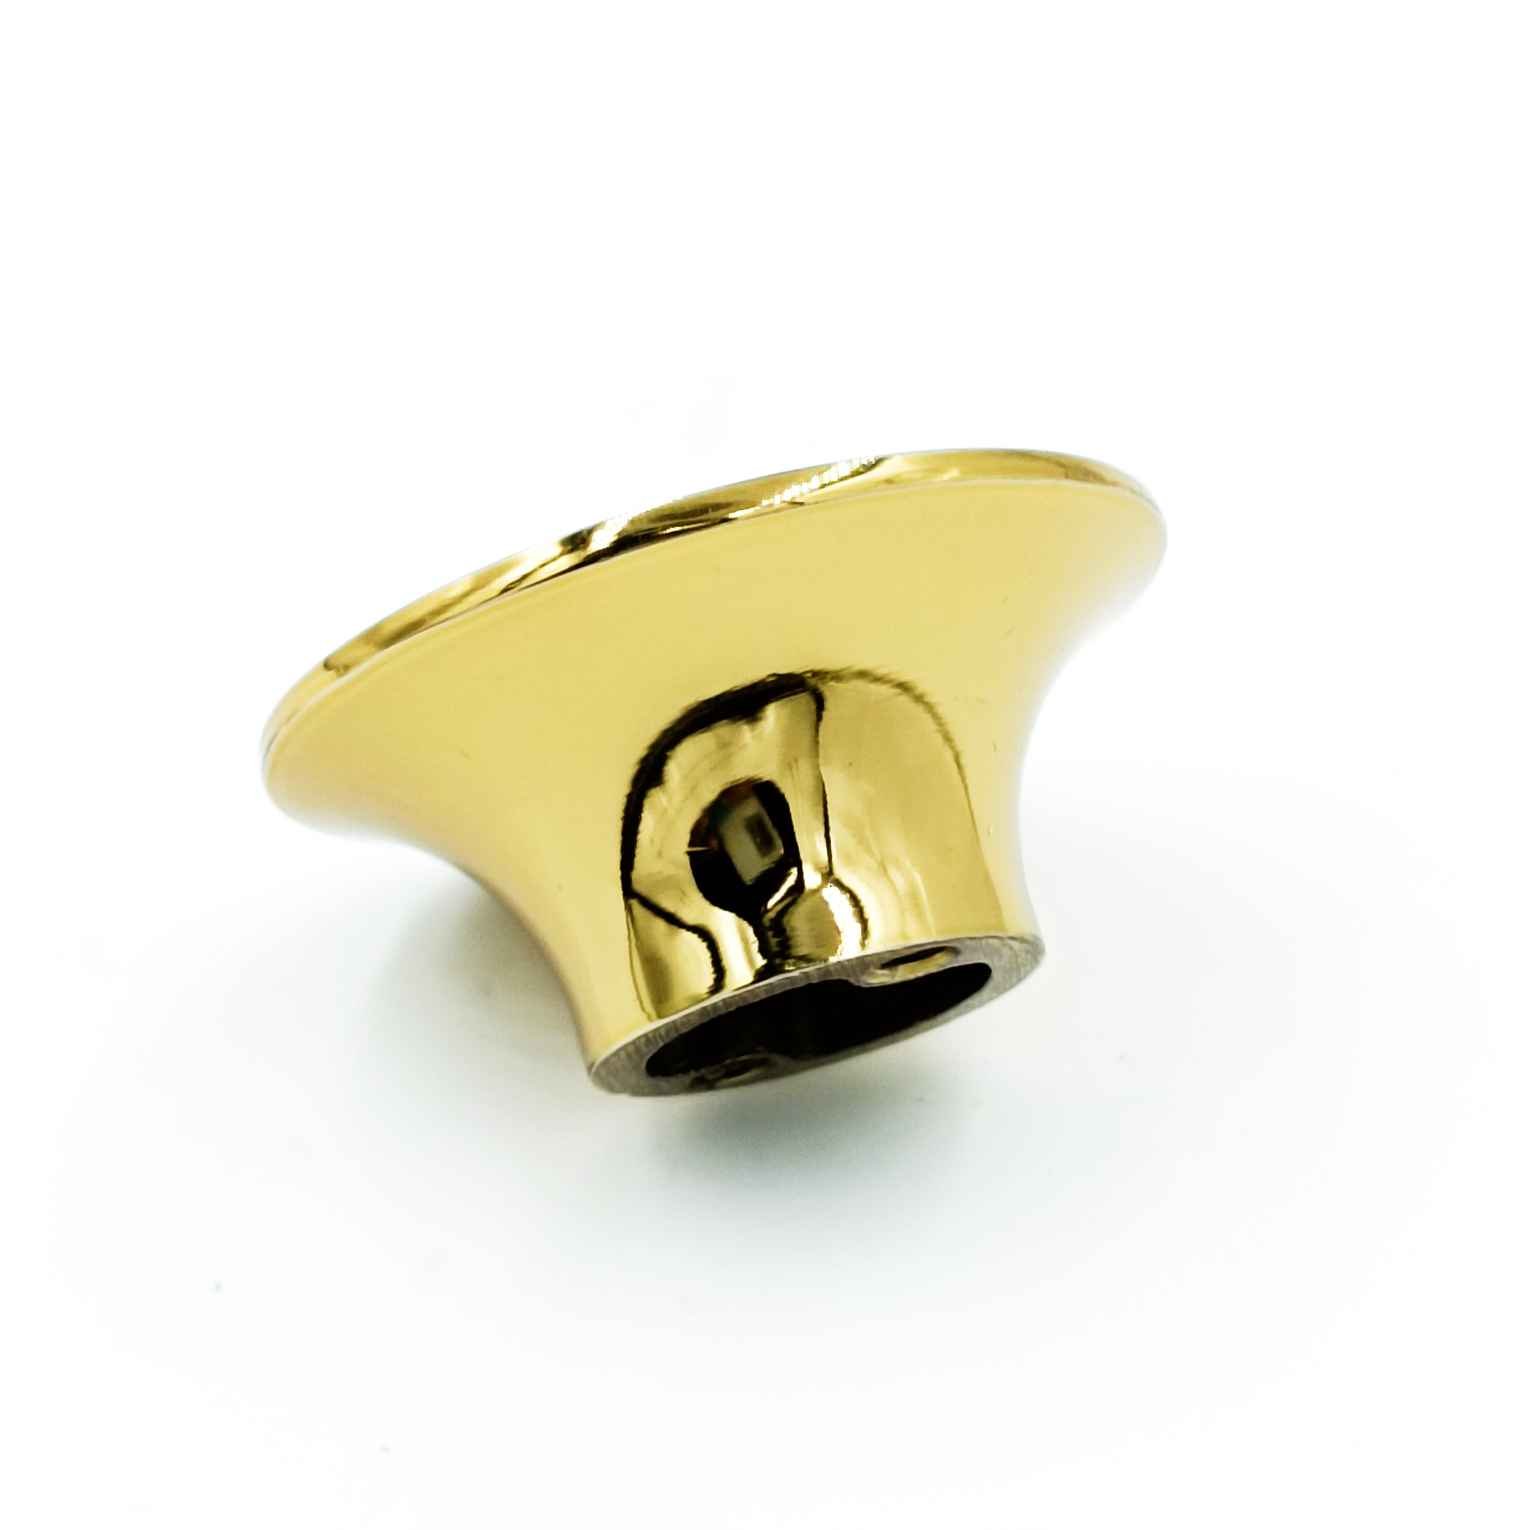 Fancy Drawer knob round 2 inch DK207 Antique/gold,Black,Gold/white